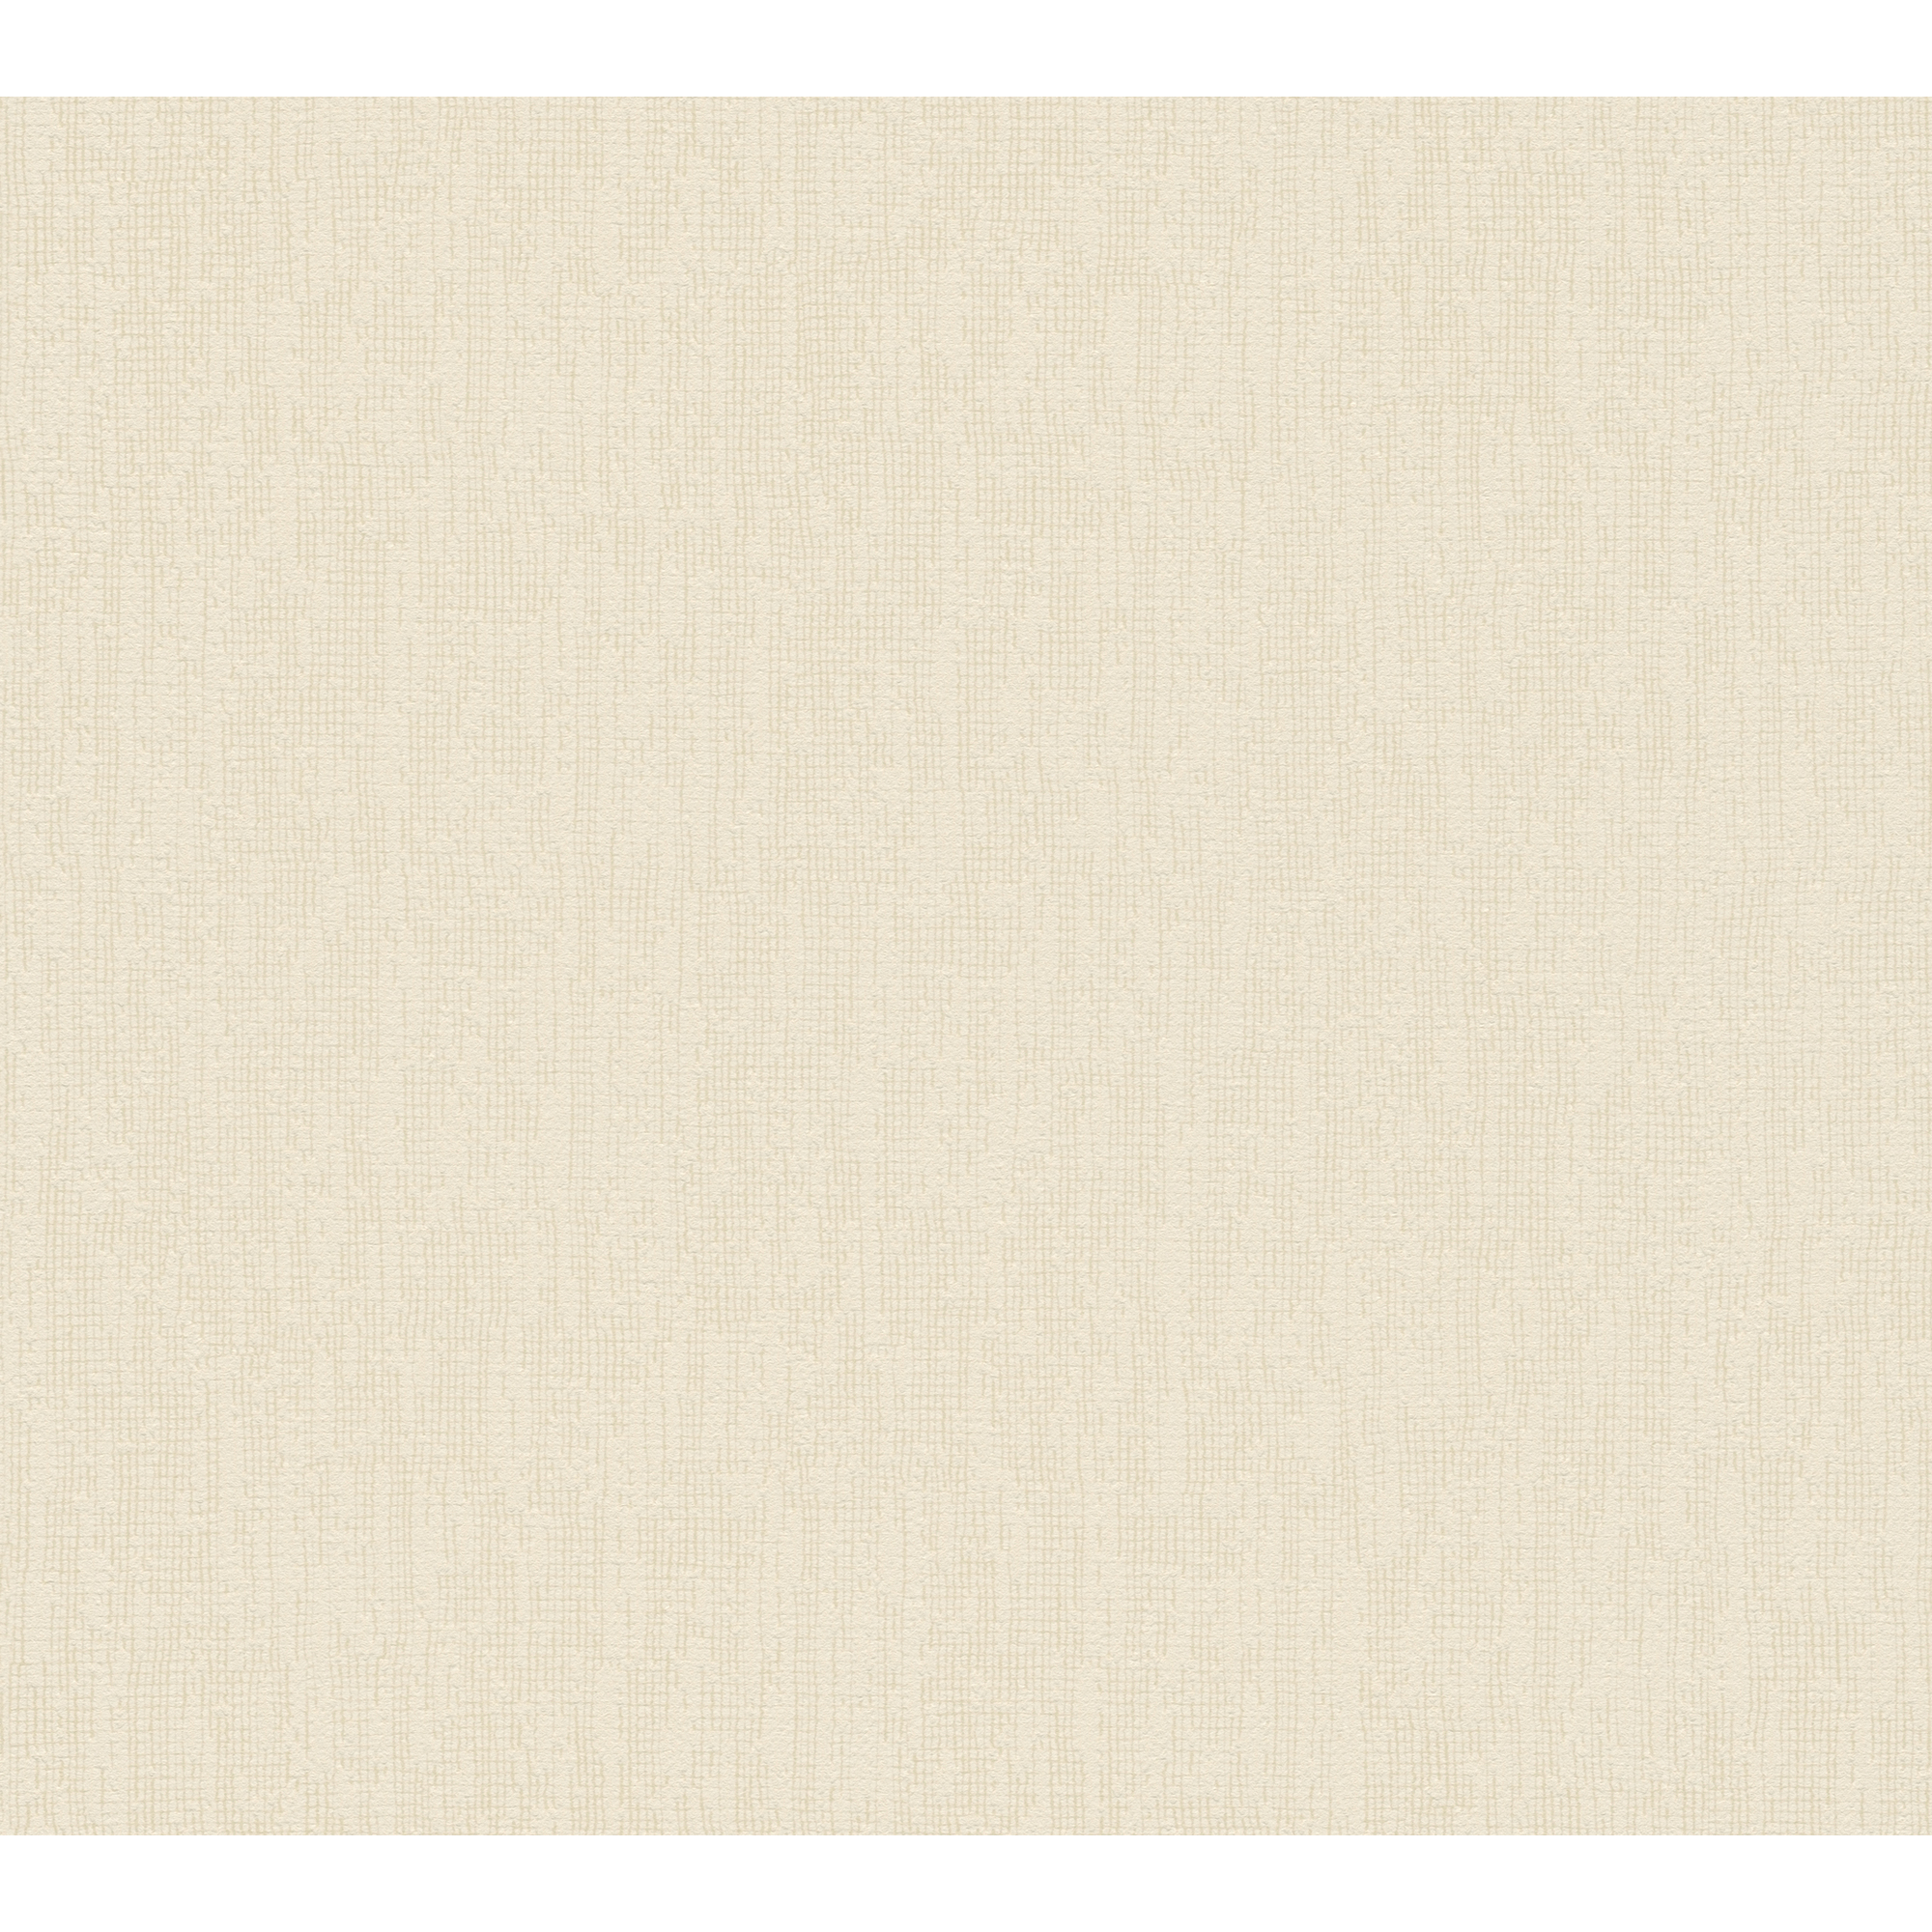 Vliestapete 'Hygge 2' Unistruktur beige/creme 10,05 x 0,53 m + product picture